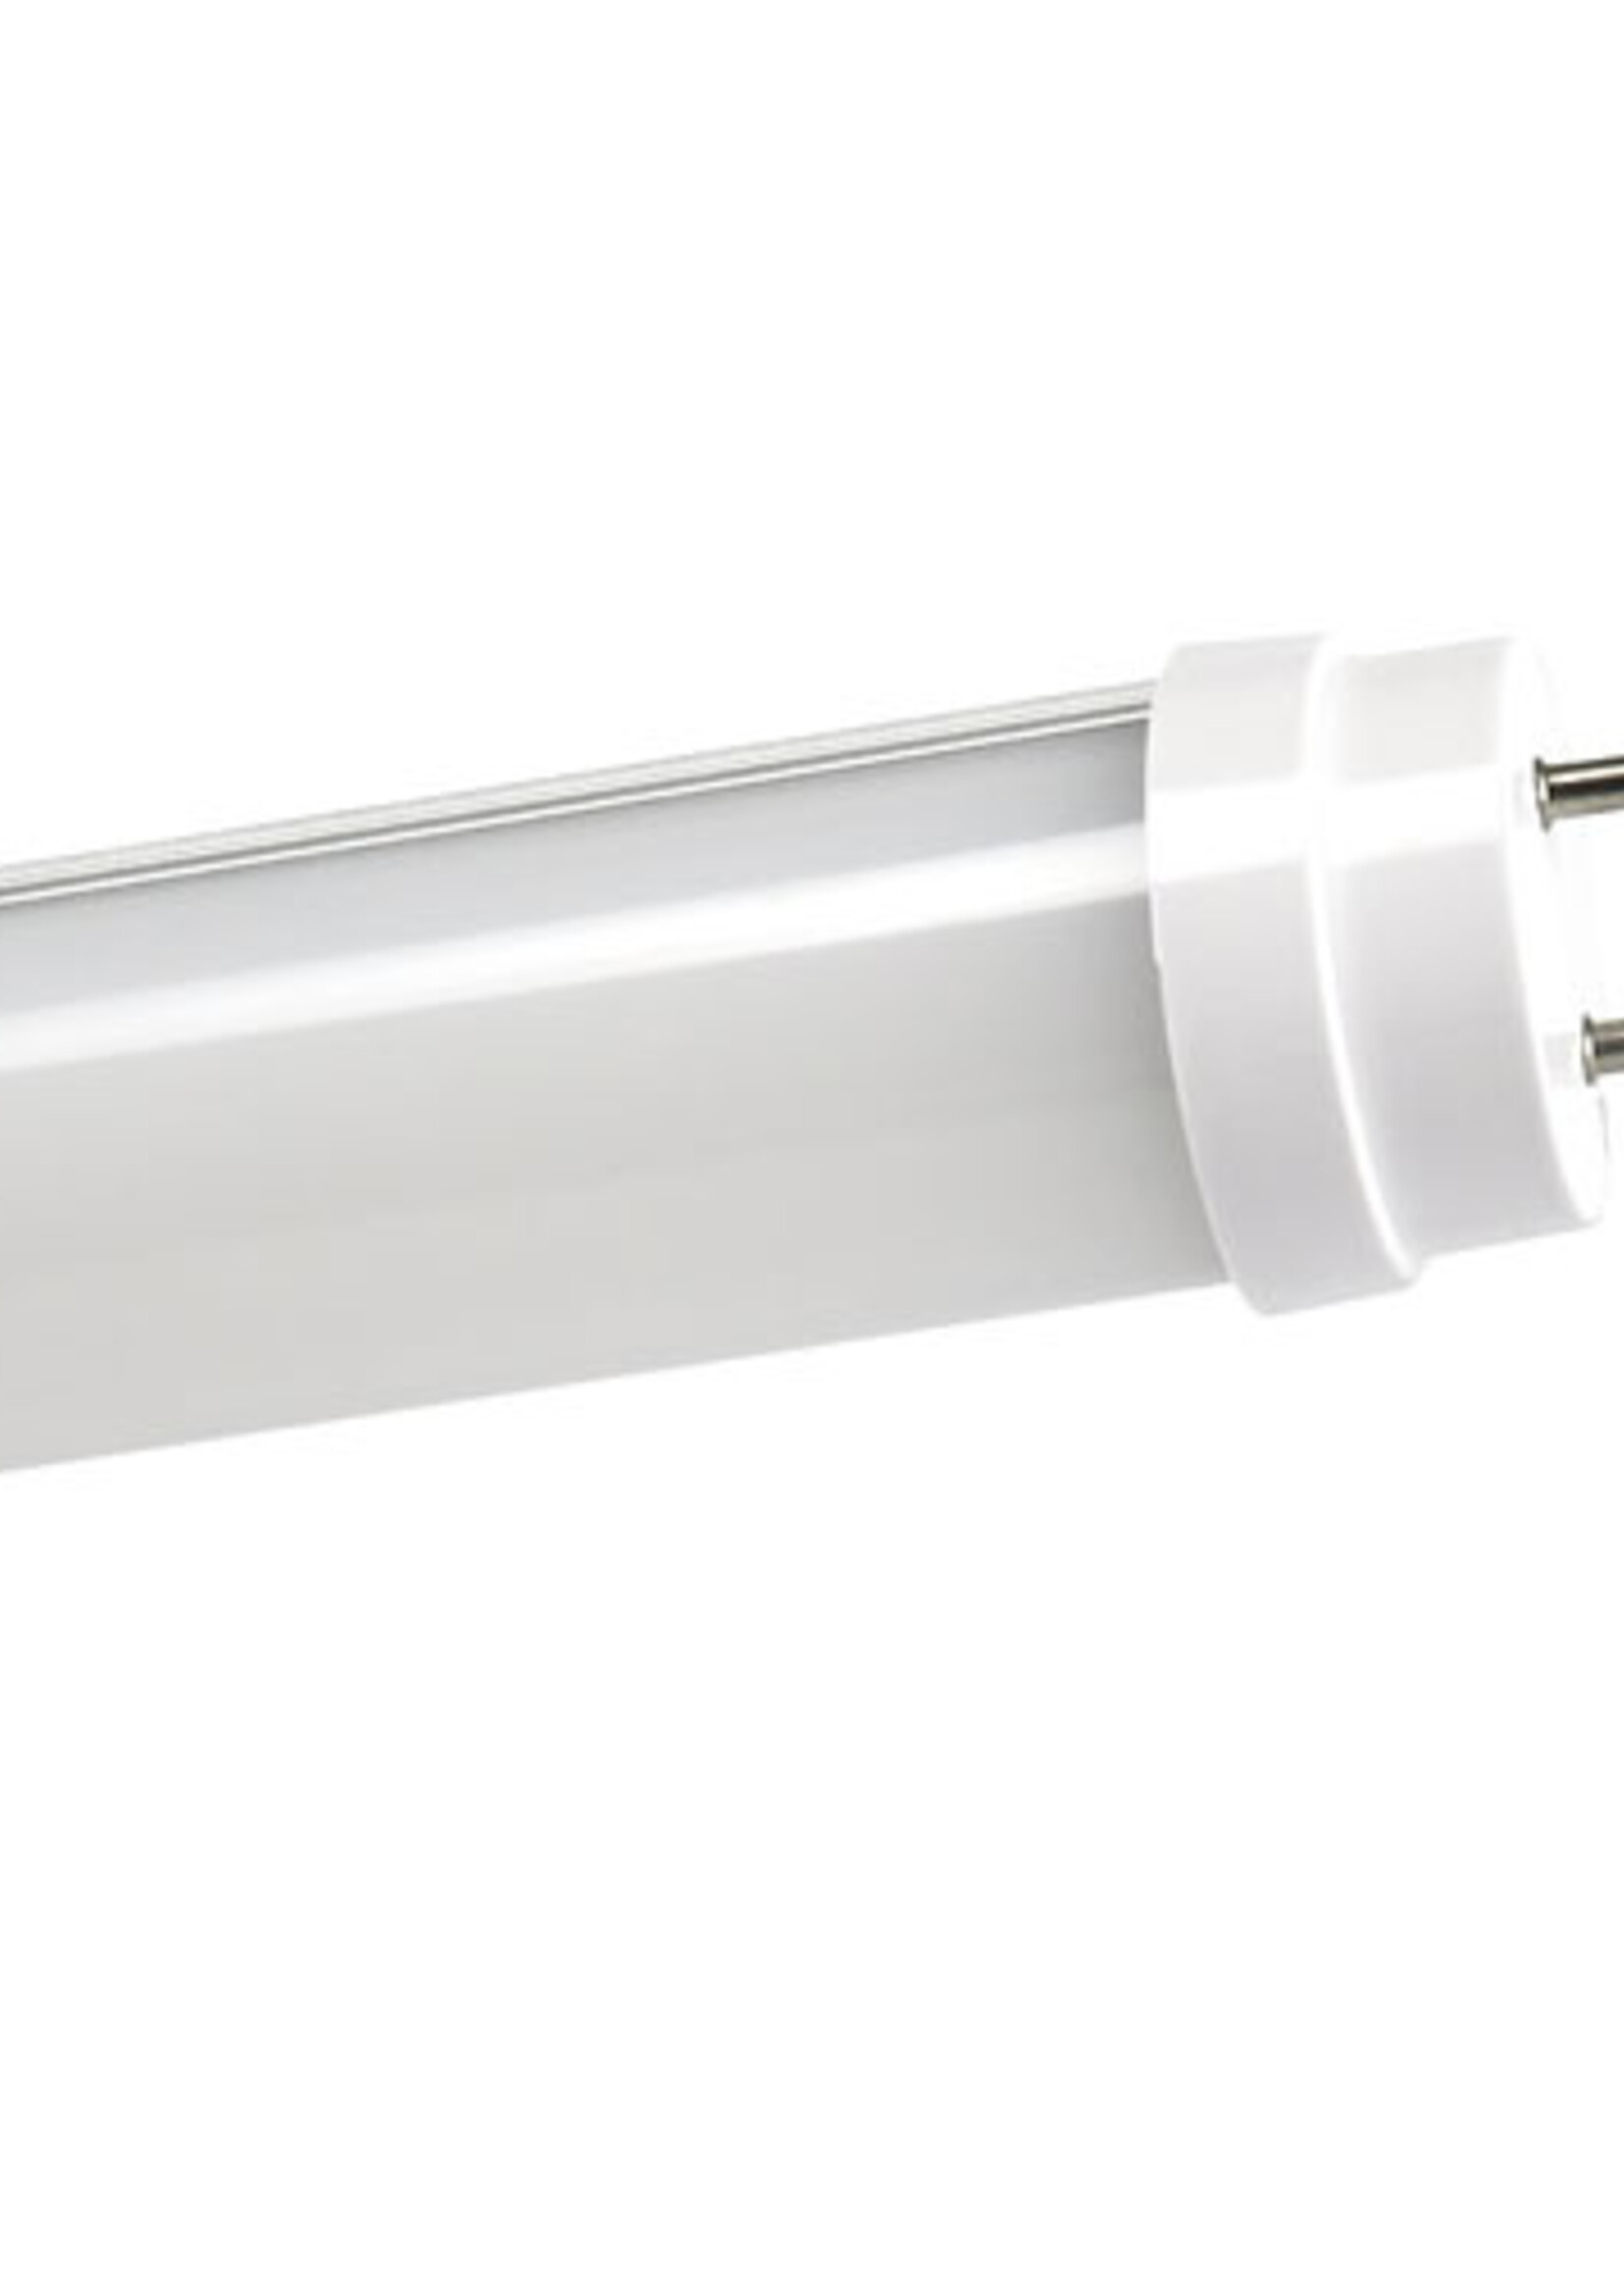 LEDWINKEL-Online LED TL Buis T8 90cm 14W 140lm/W - Pro High lumen